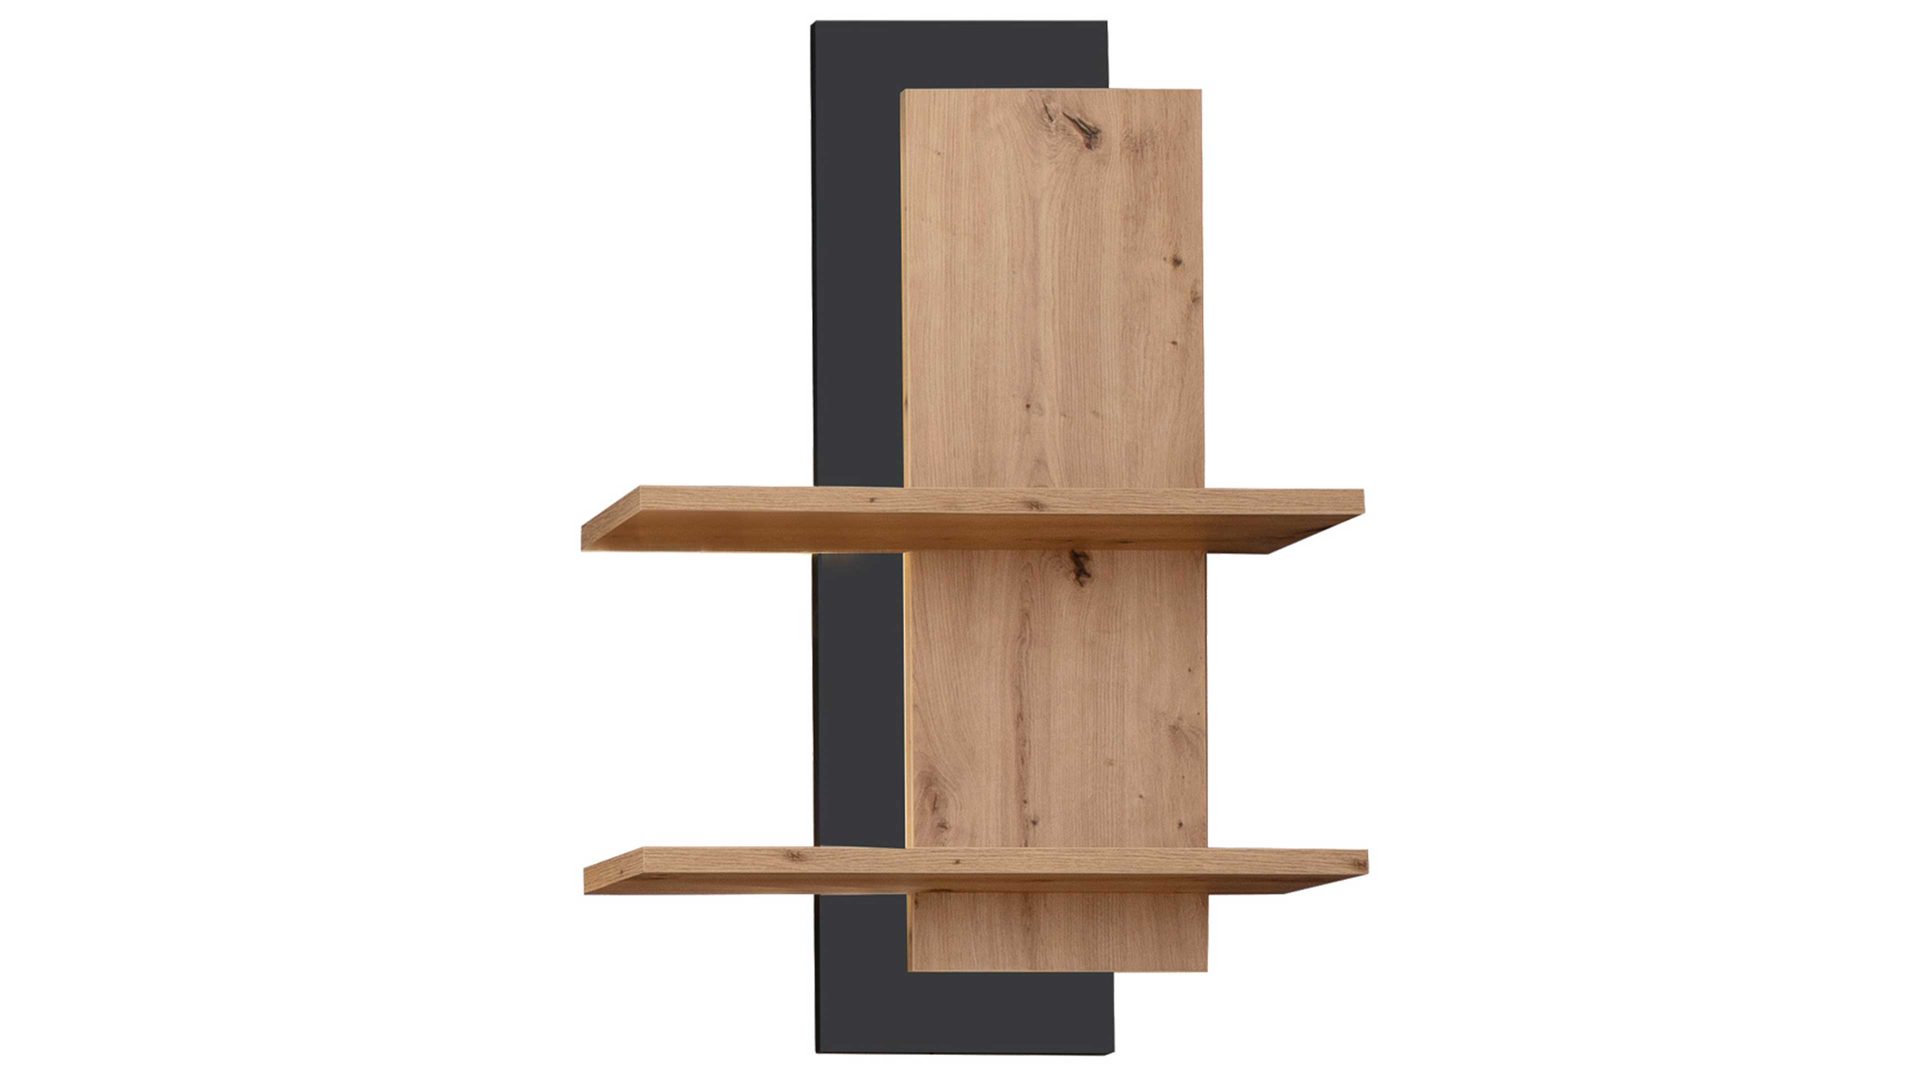 Wandregal Mca furniture aus Holz in Holzfarben Wohnprogramm Brüssel – Wandregal Balkeneiche & Anthrazit – ca. 70 x 106 cm